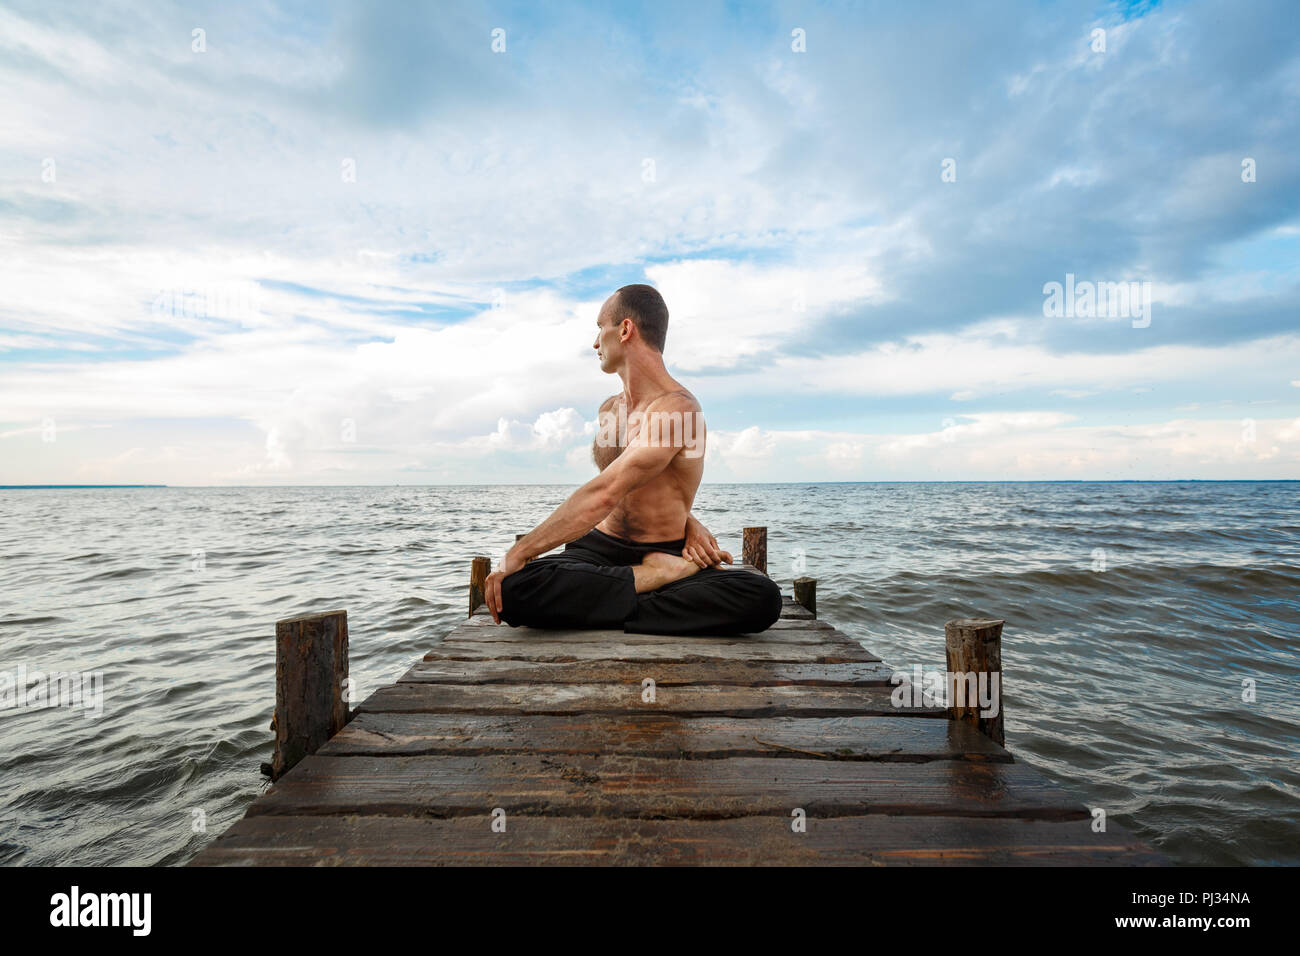 Junge yoga Trainer Yoga Übungen auf einer hölzernen Pier an einem See oder Fluss Ufer. Gesunder Lebensstil Konzept Stockfoto